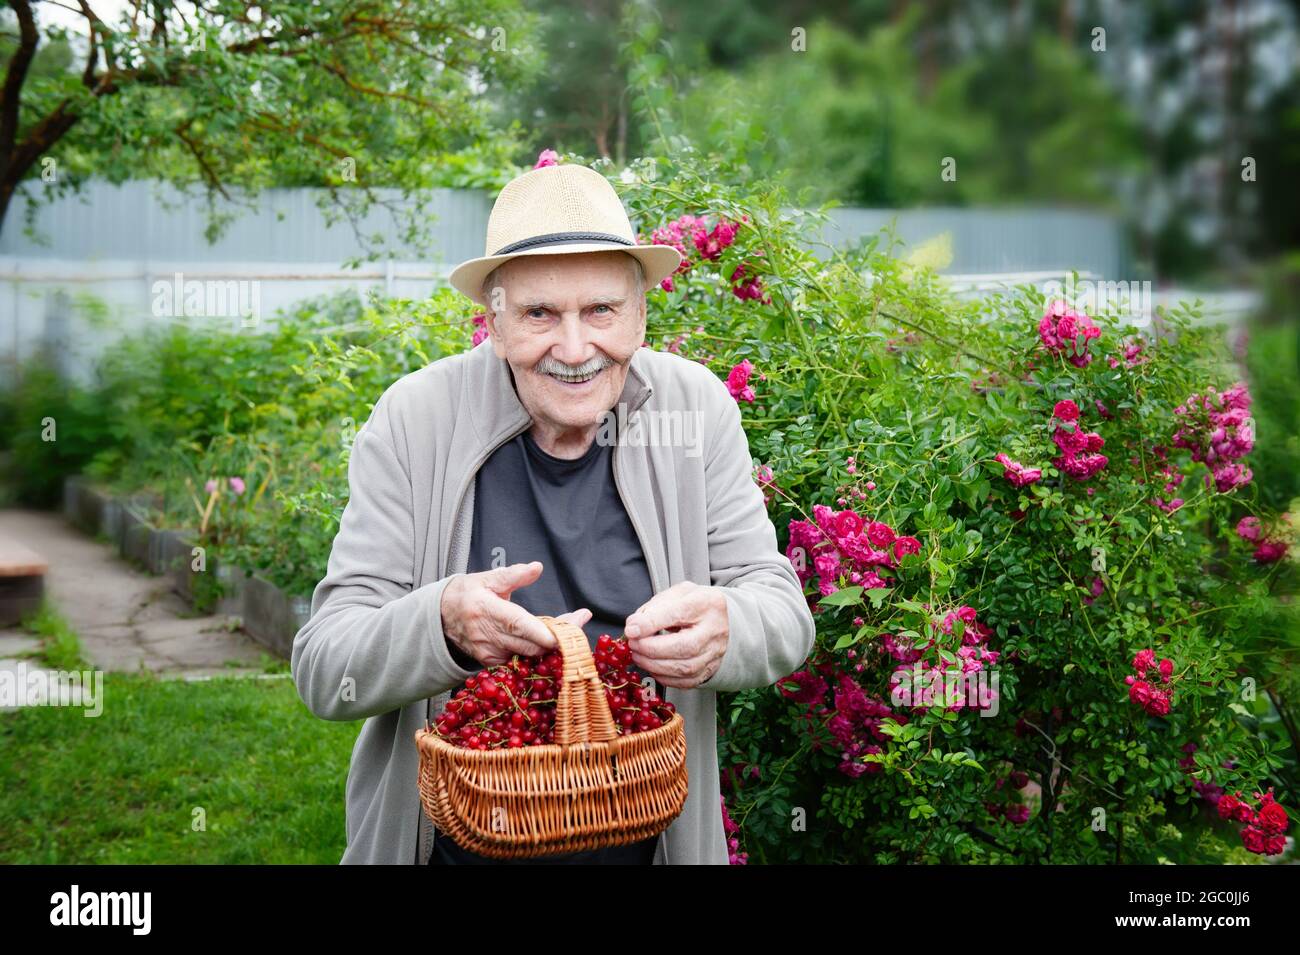 Ein alter Gärtner hält einen Korb mit roten Johannisbeeren in seinen Händen. Früchte wachsen im Stadtgarten. Aktives Alter. Arbeiten Sie an der frischen Luft. Stockfoto